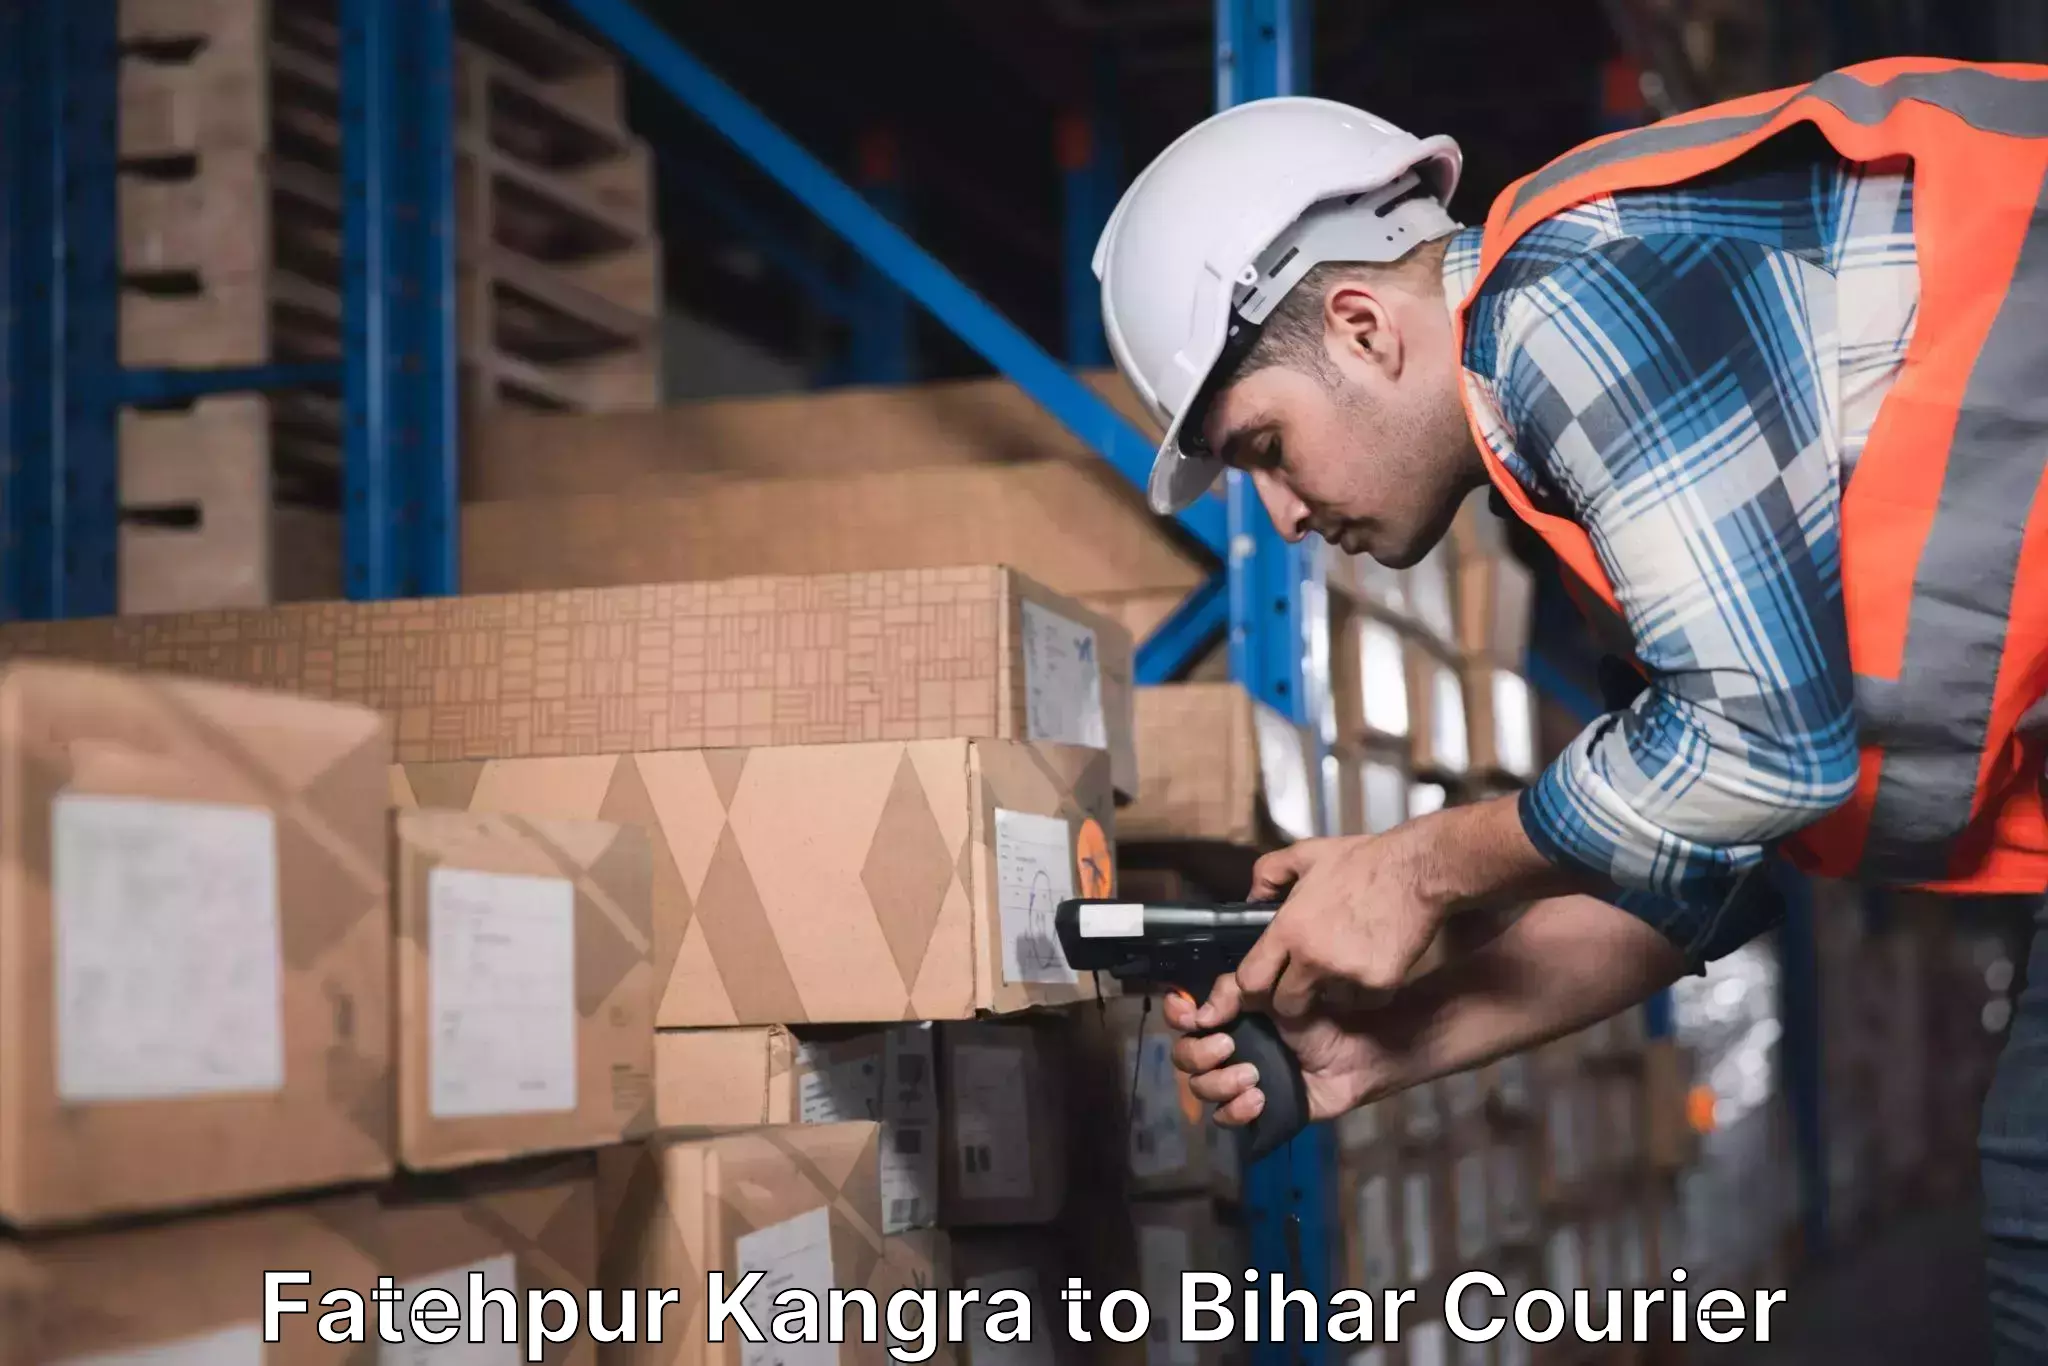 24-hour courier service Fatehpur Kangra to Darbhanga